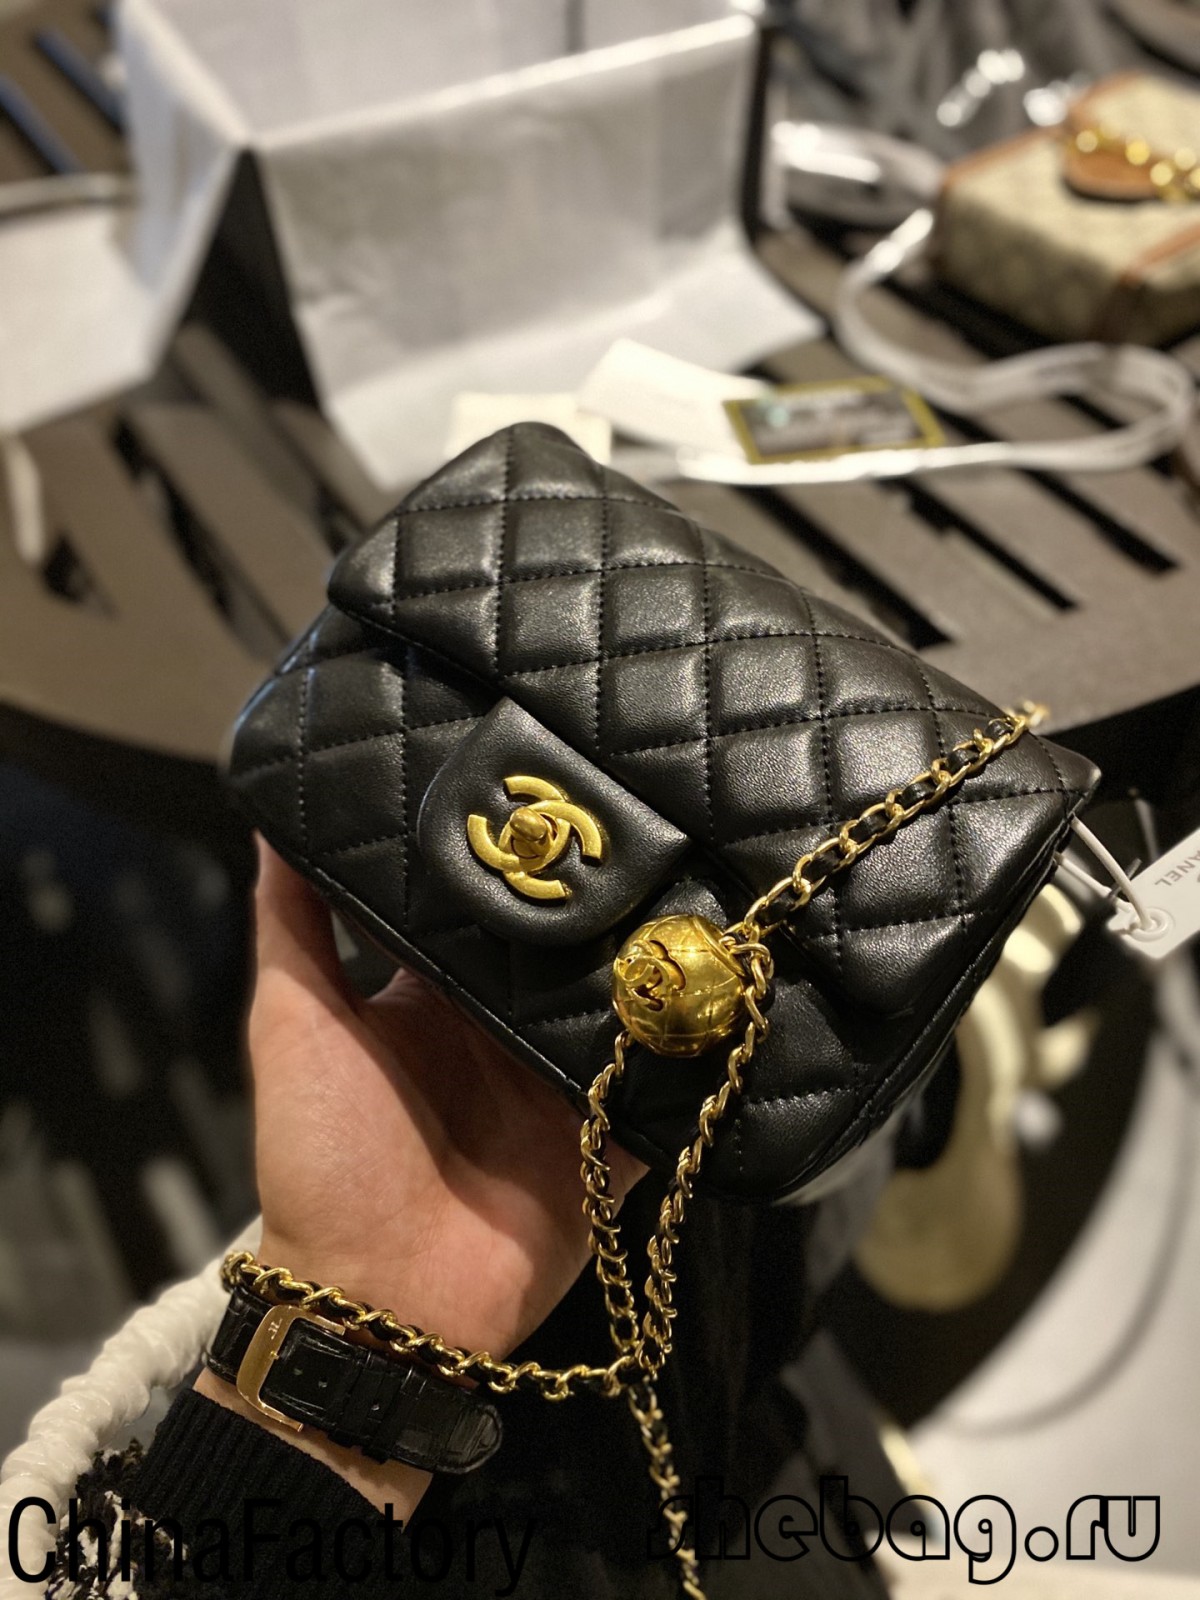 Replika torby Chanel 1:1: klasyczna klapa z regulowanym łańcuszkiem (2022 Najgorętsze)-najwyższa jakość fałszywe torebki Louis Vuitton sklep internetowy, projektant repliki torebka ru